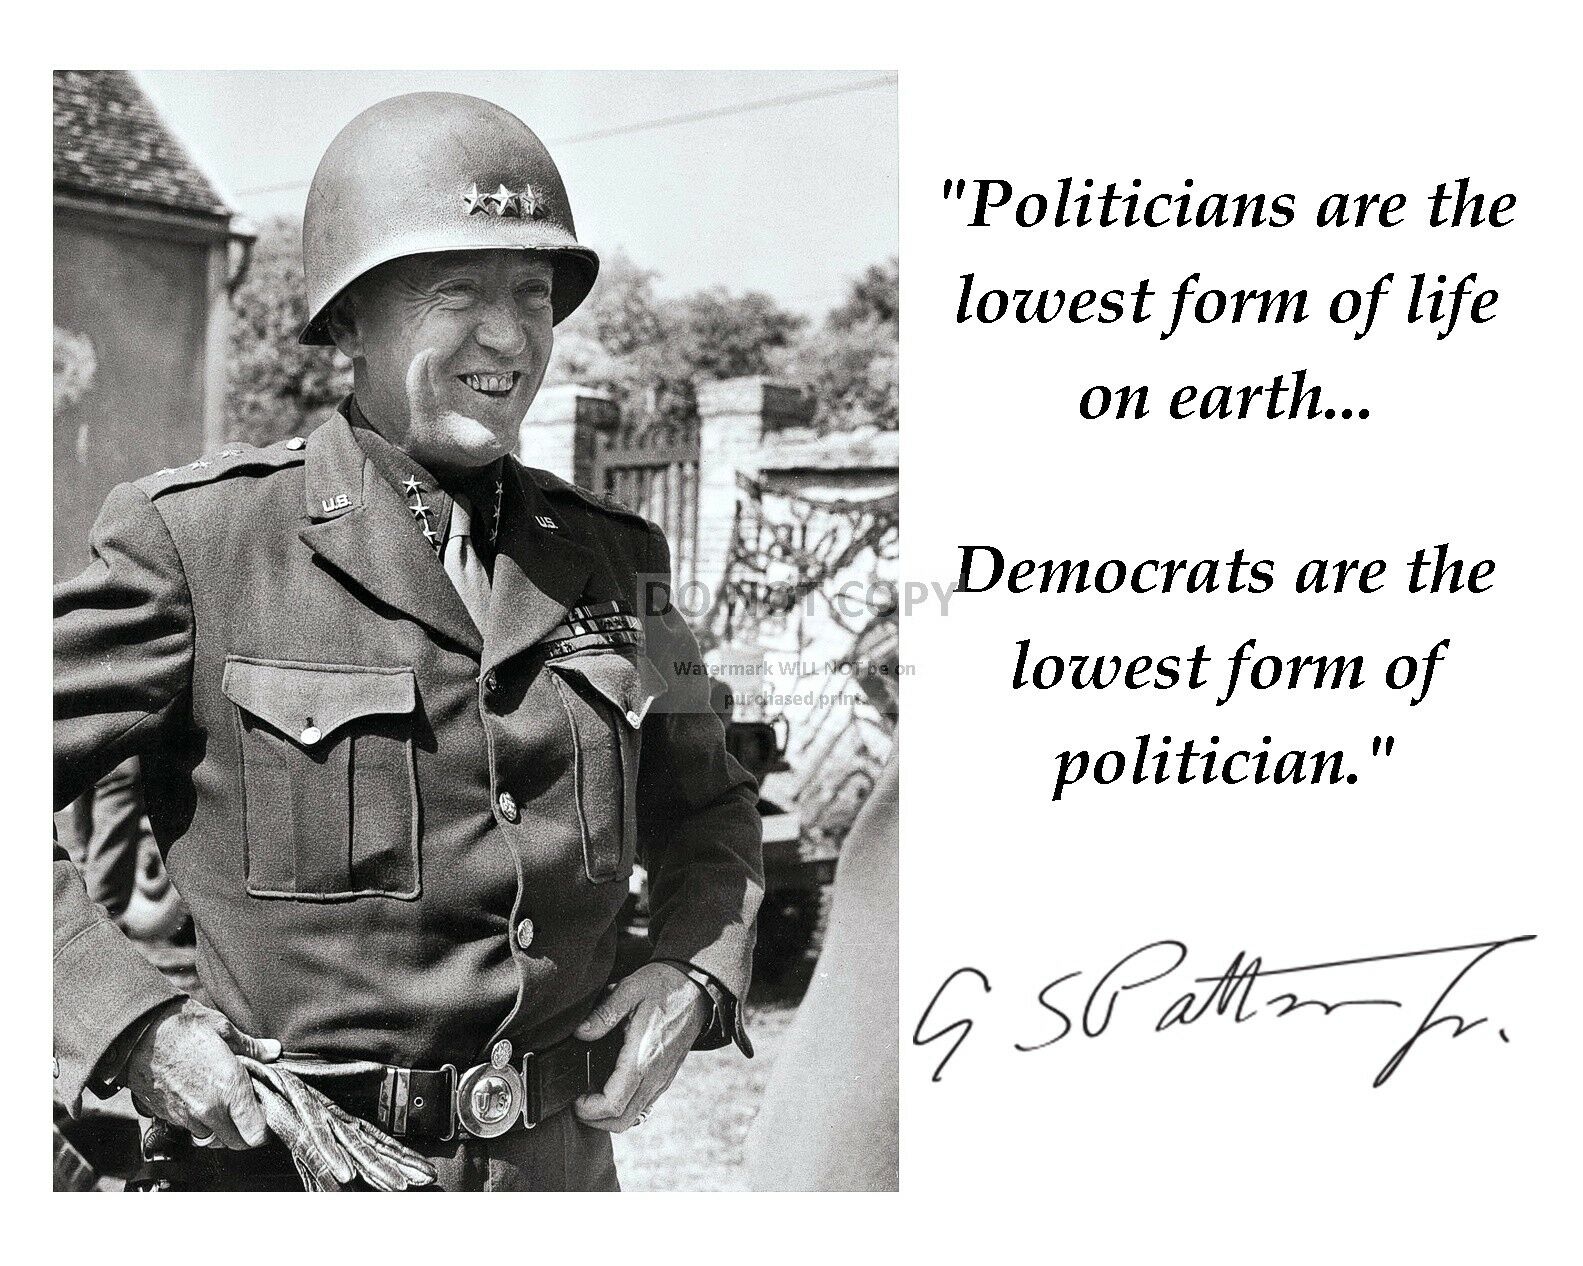 General George S. Patton Quote W/ Facsimile Autograph - 8x10 Photo (pq-015)